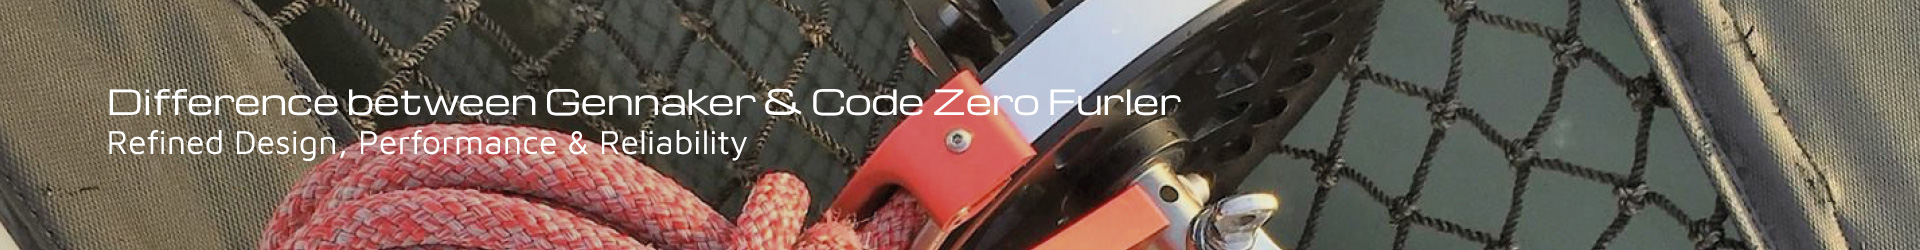 code zero furler